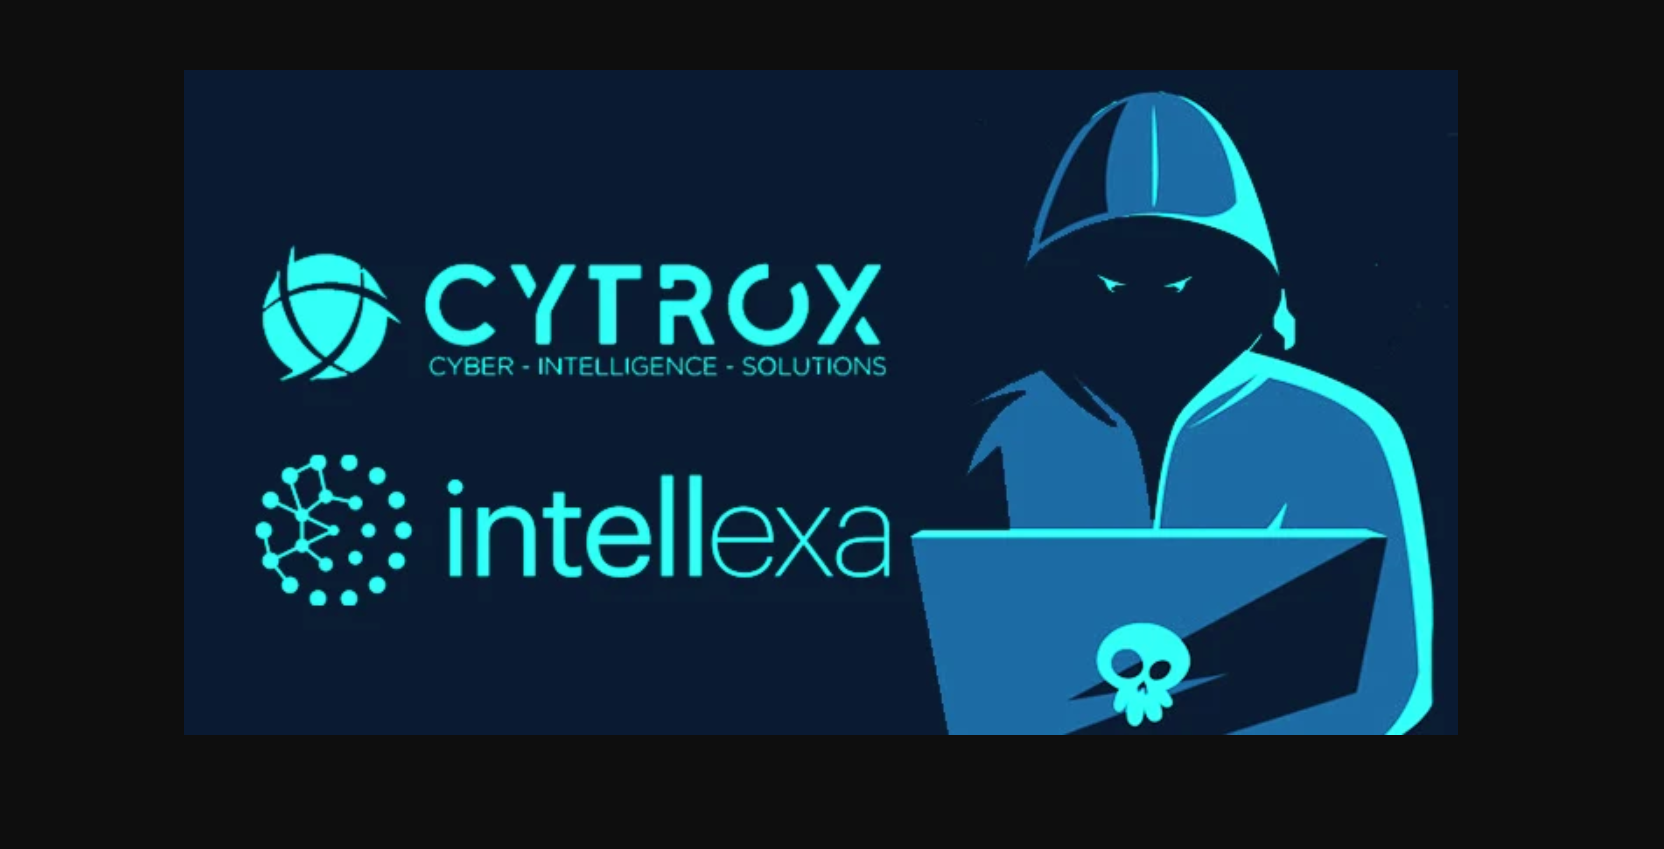 Les logos de Cytrox et Intellexa, vendeurs de logiciels espion